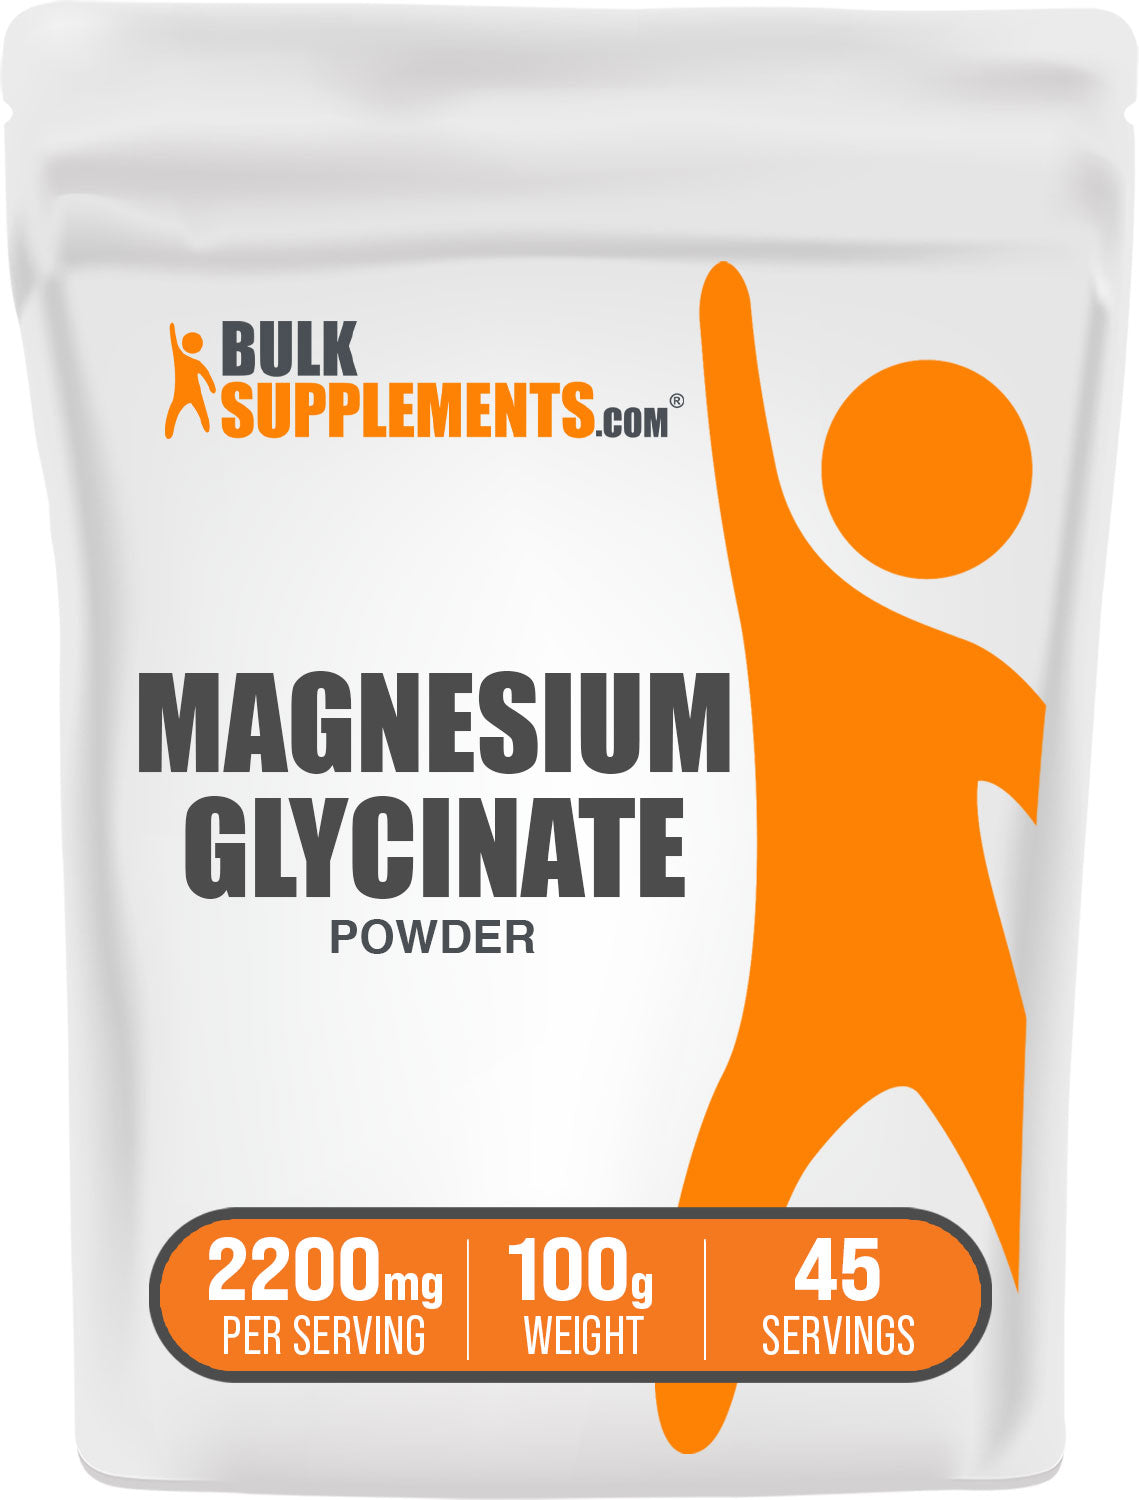 Magnesium glycinate pure magnesium glycinate 100g bag